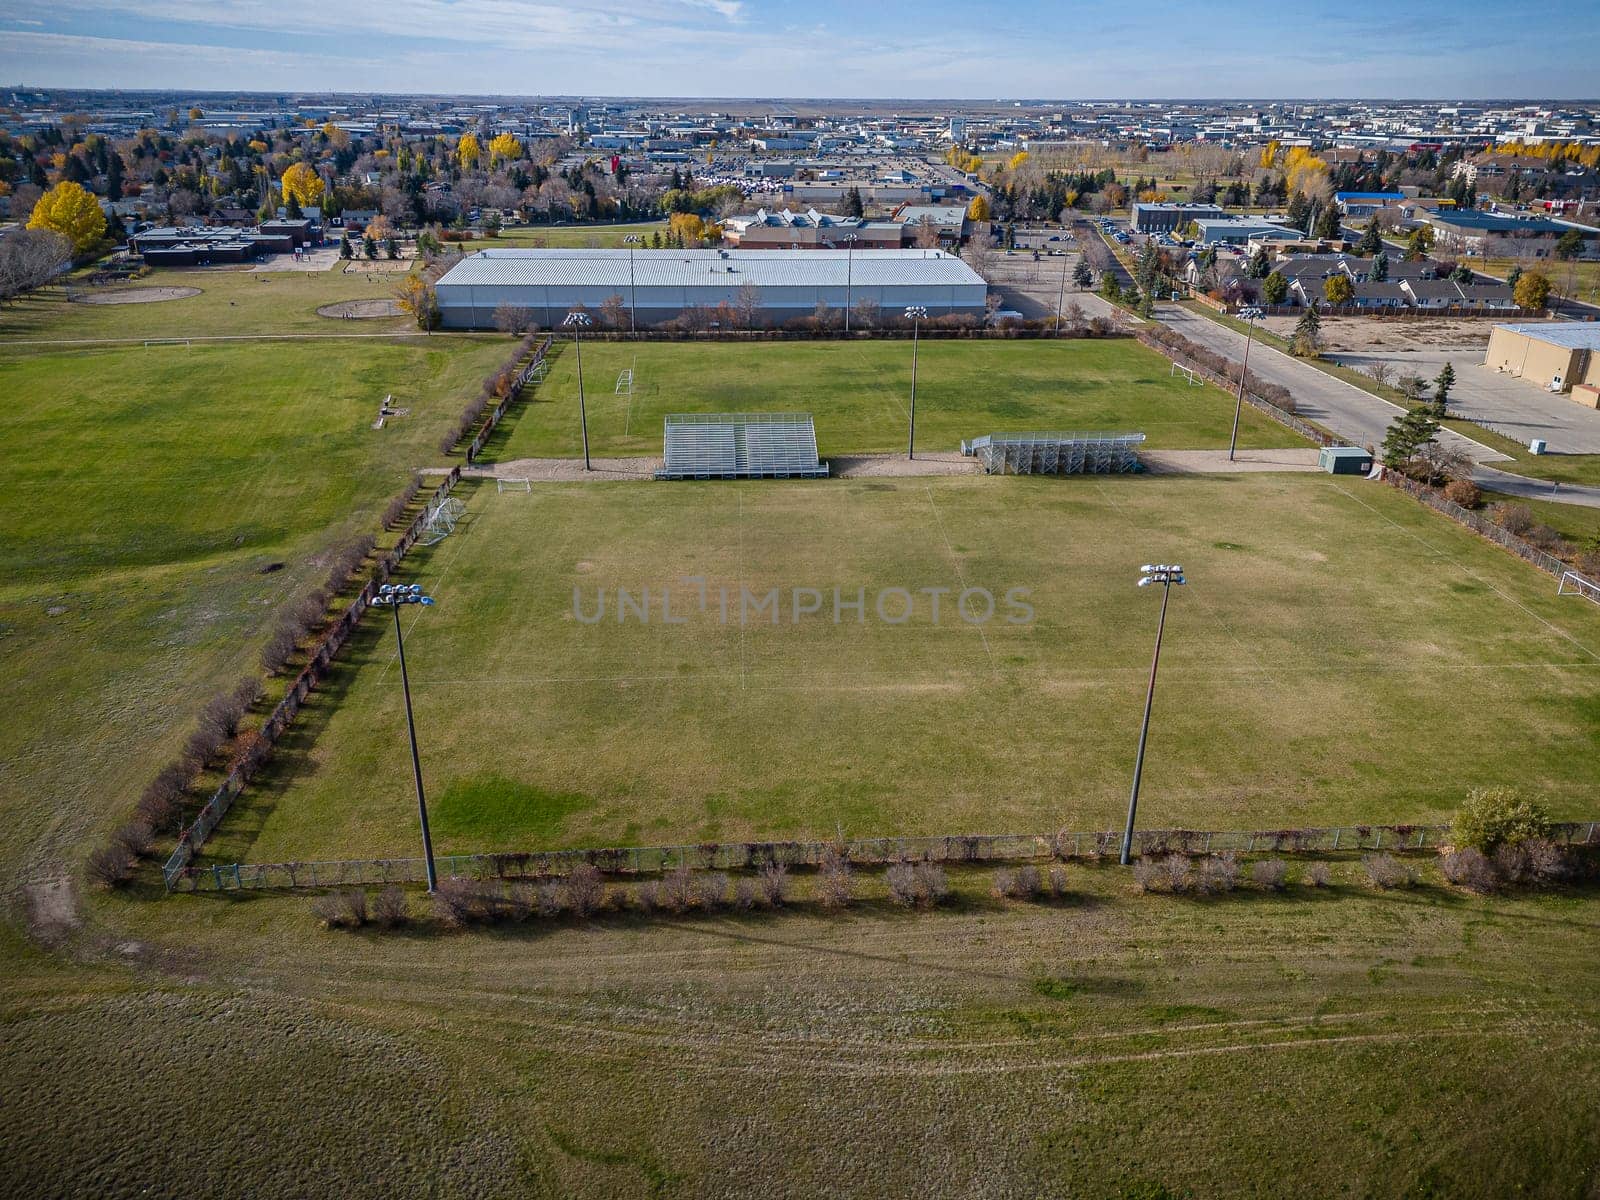 er Heights Neighborhood Aerial View in Saskatoon by sprokop